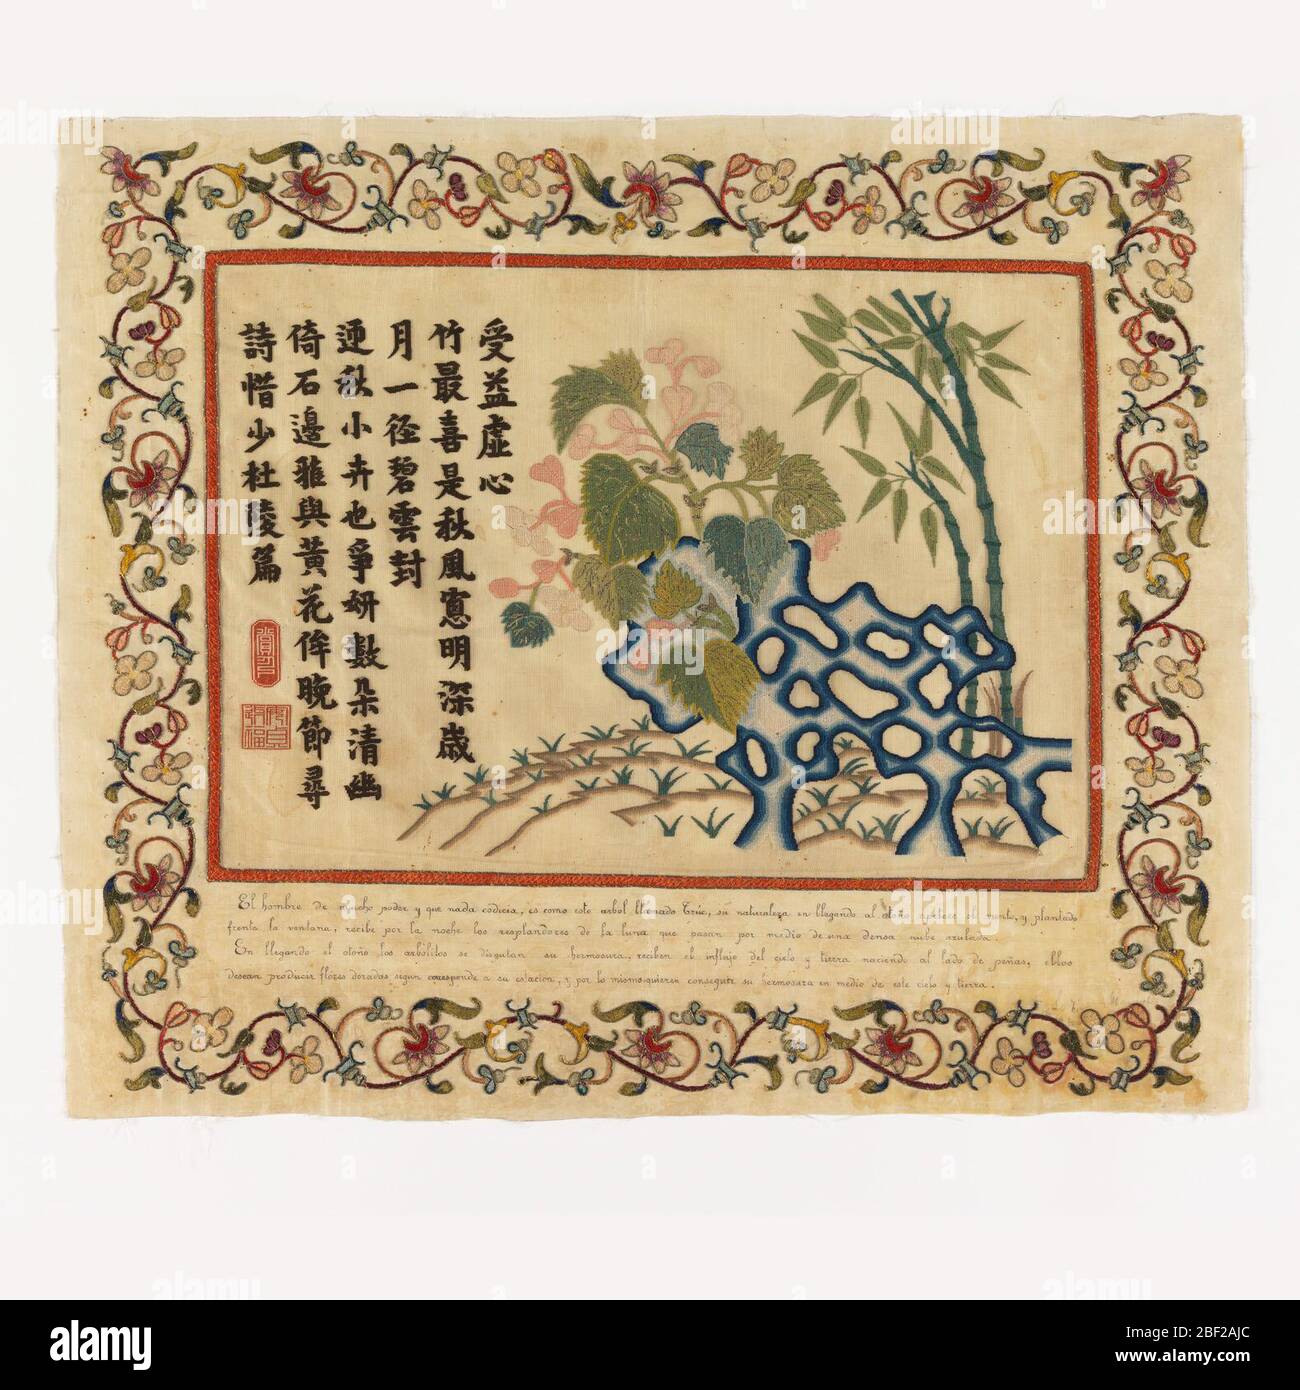 Tessile. Il rettangolo centrale è un'applicazione di ricamo su garza con due poesie cinesi sul lato sinistro e una scena rocciosa con alberi di bambù e fiori a destra all'interno di un bordo rosso ricamato. Foto Stock